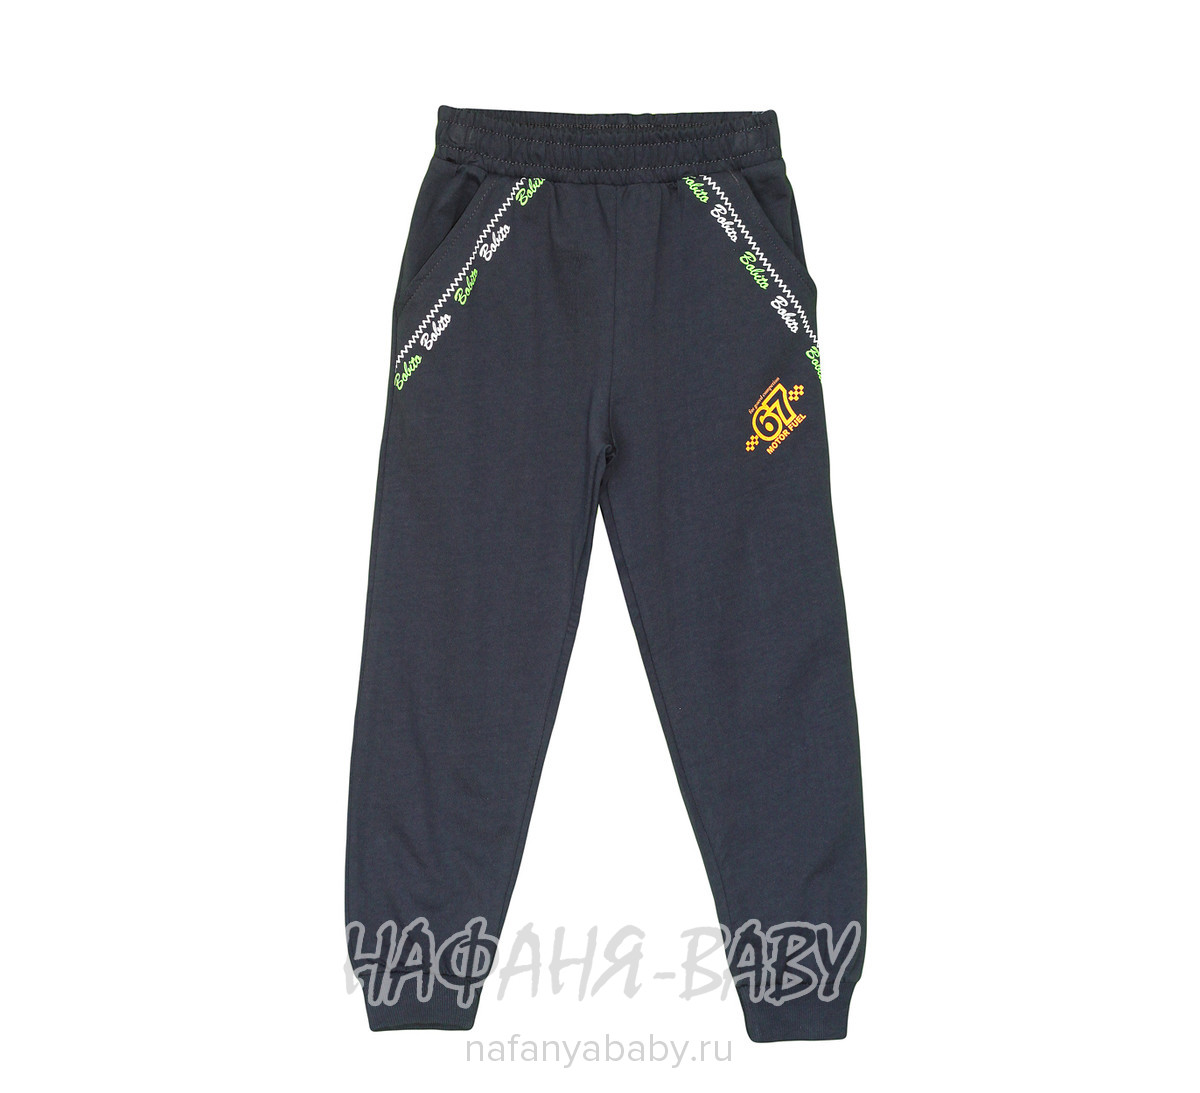 Детские трикотажные брюки Bobito, купить в интернет магазине Нафаня. арт: 2202.